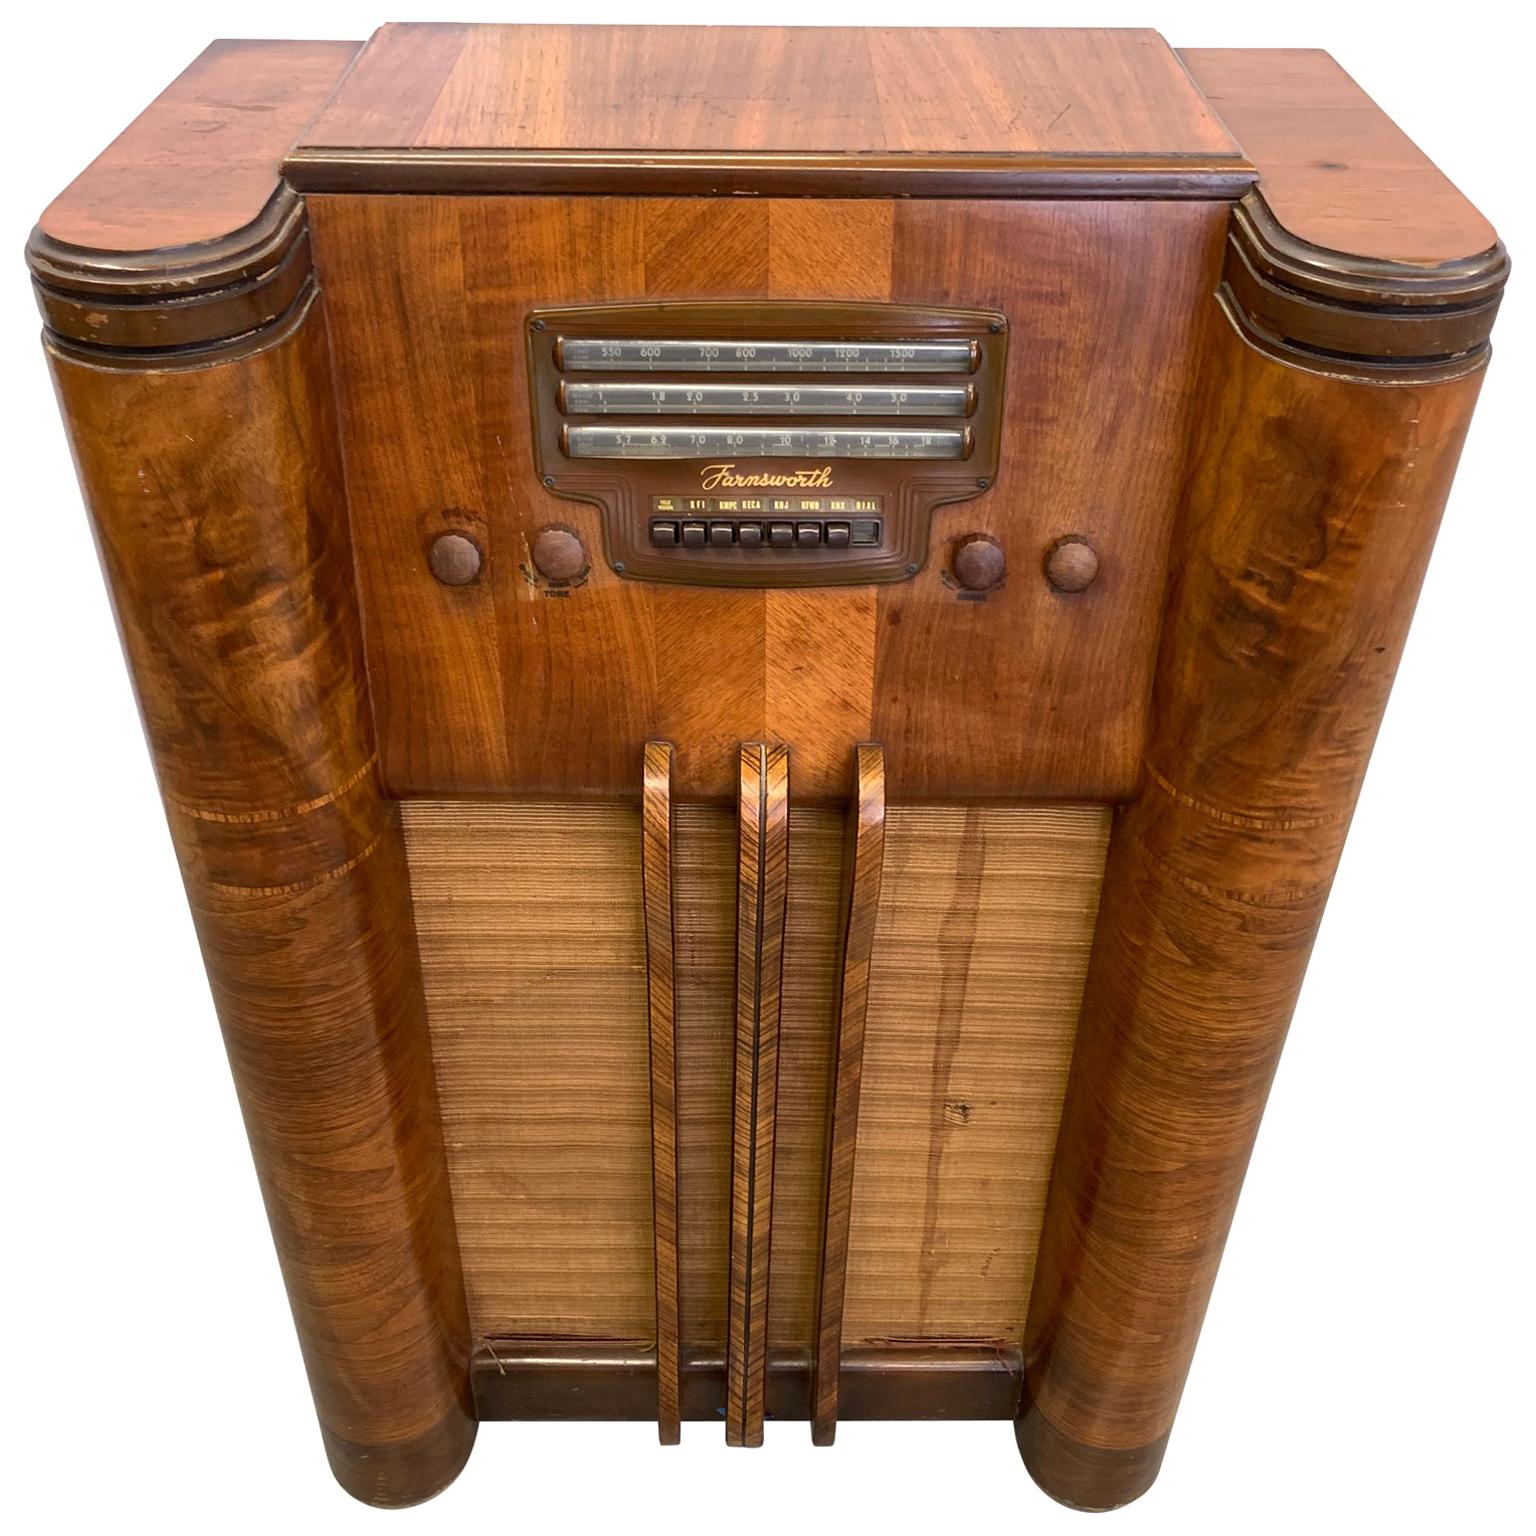 Vintage Floor Radio by Farnsworth Television and Radio Corp